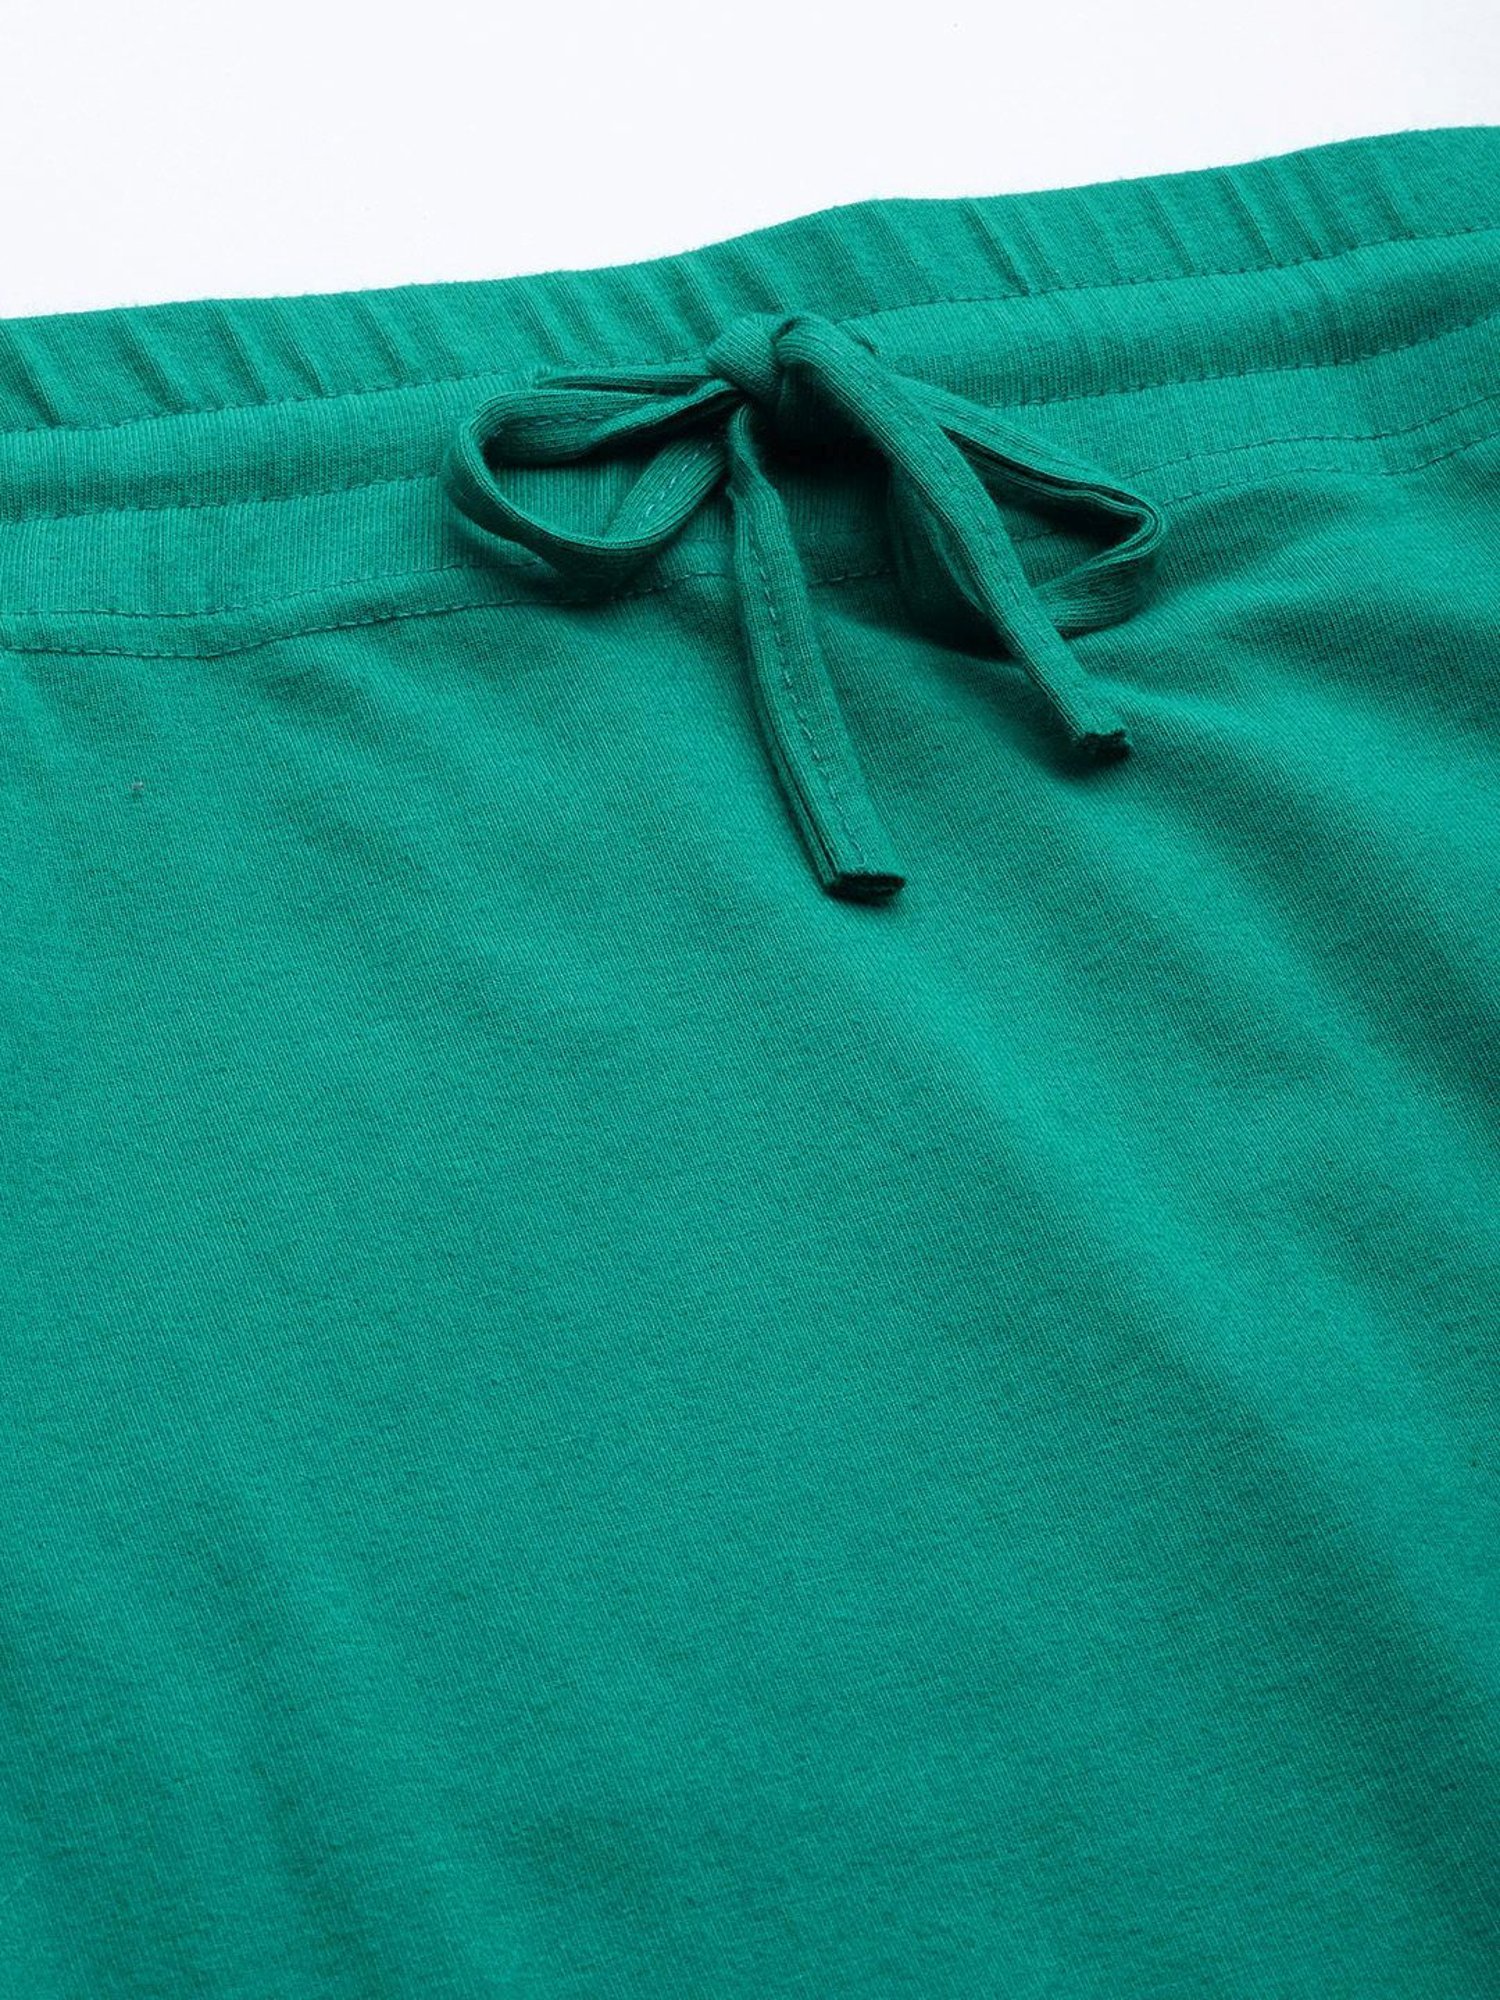 Secrets By ZeroKaata Green Plain Saree Shapewear